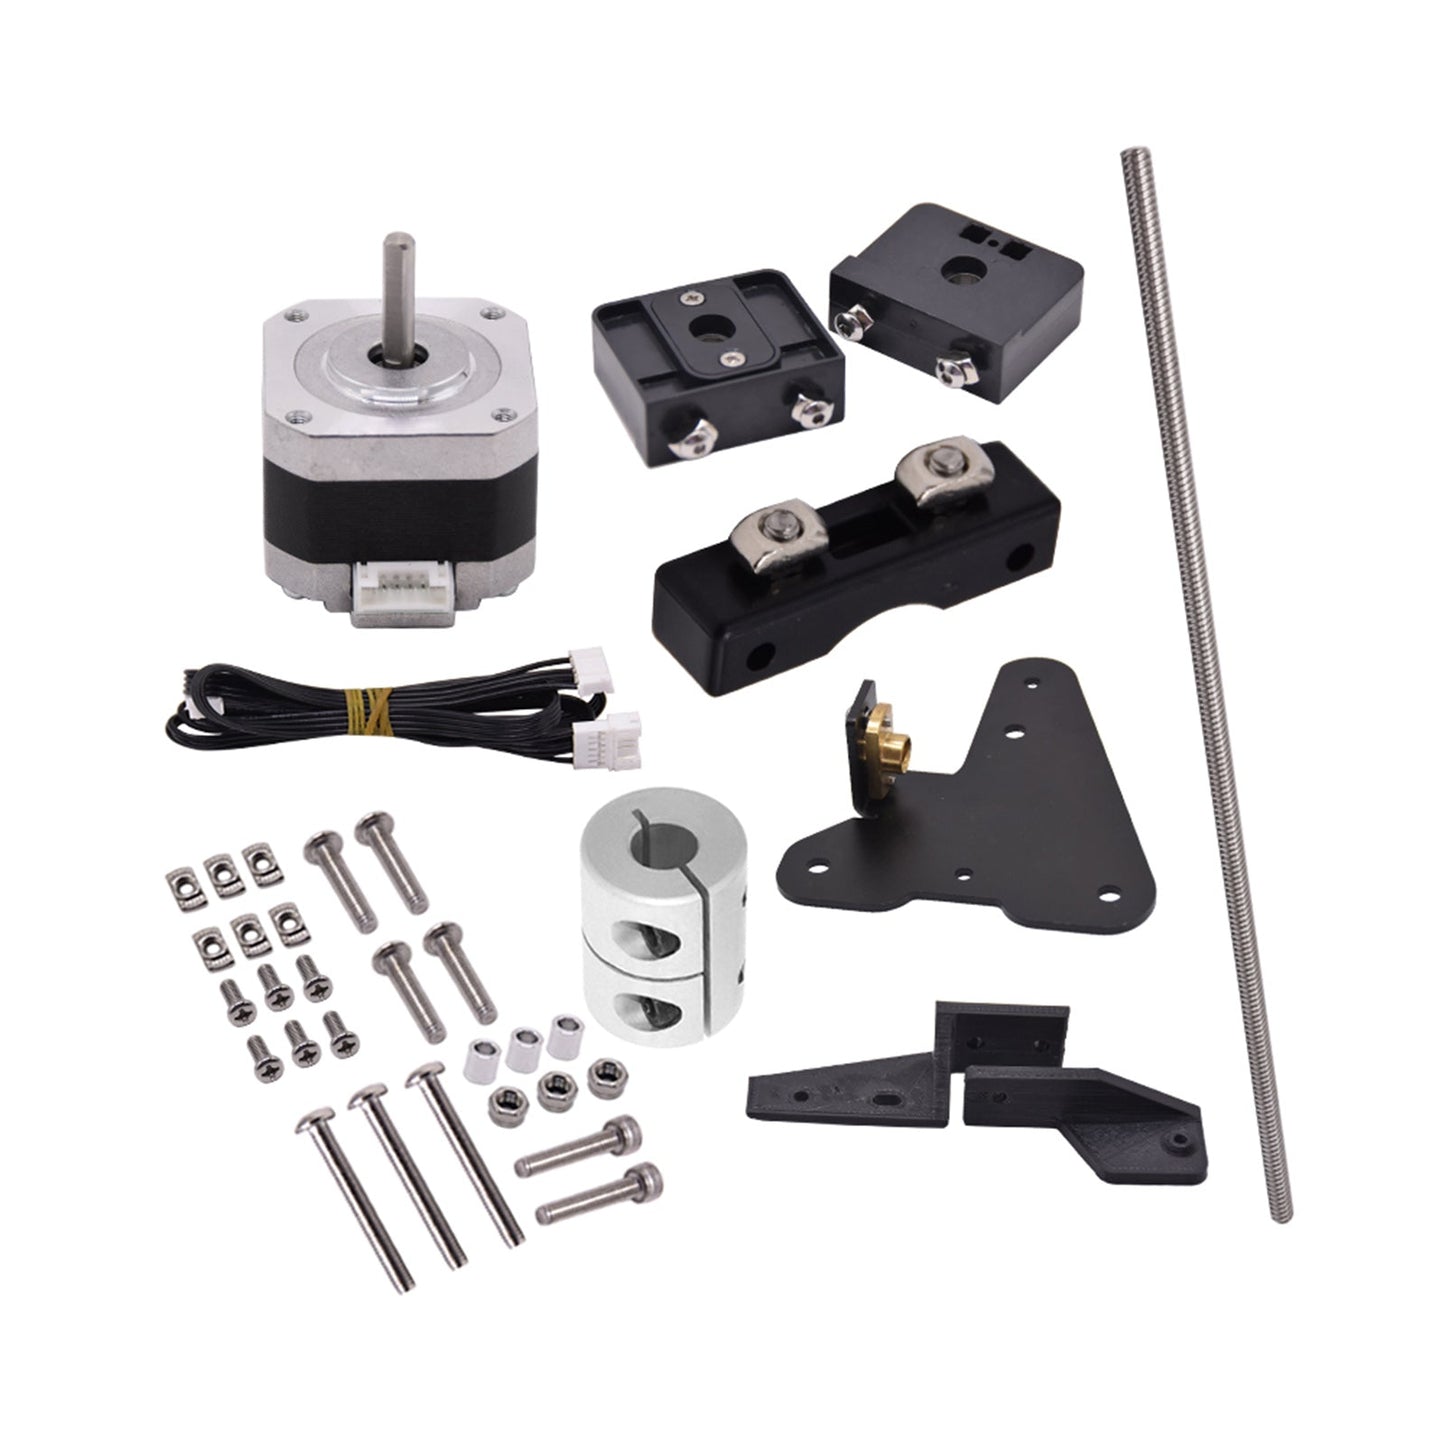 Dual Z -Achse -Blei -Schrauben -Upgrade -Kit für Ender V2 3/3S/3Pro 3D -Druckerzubehör